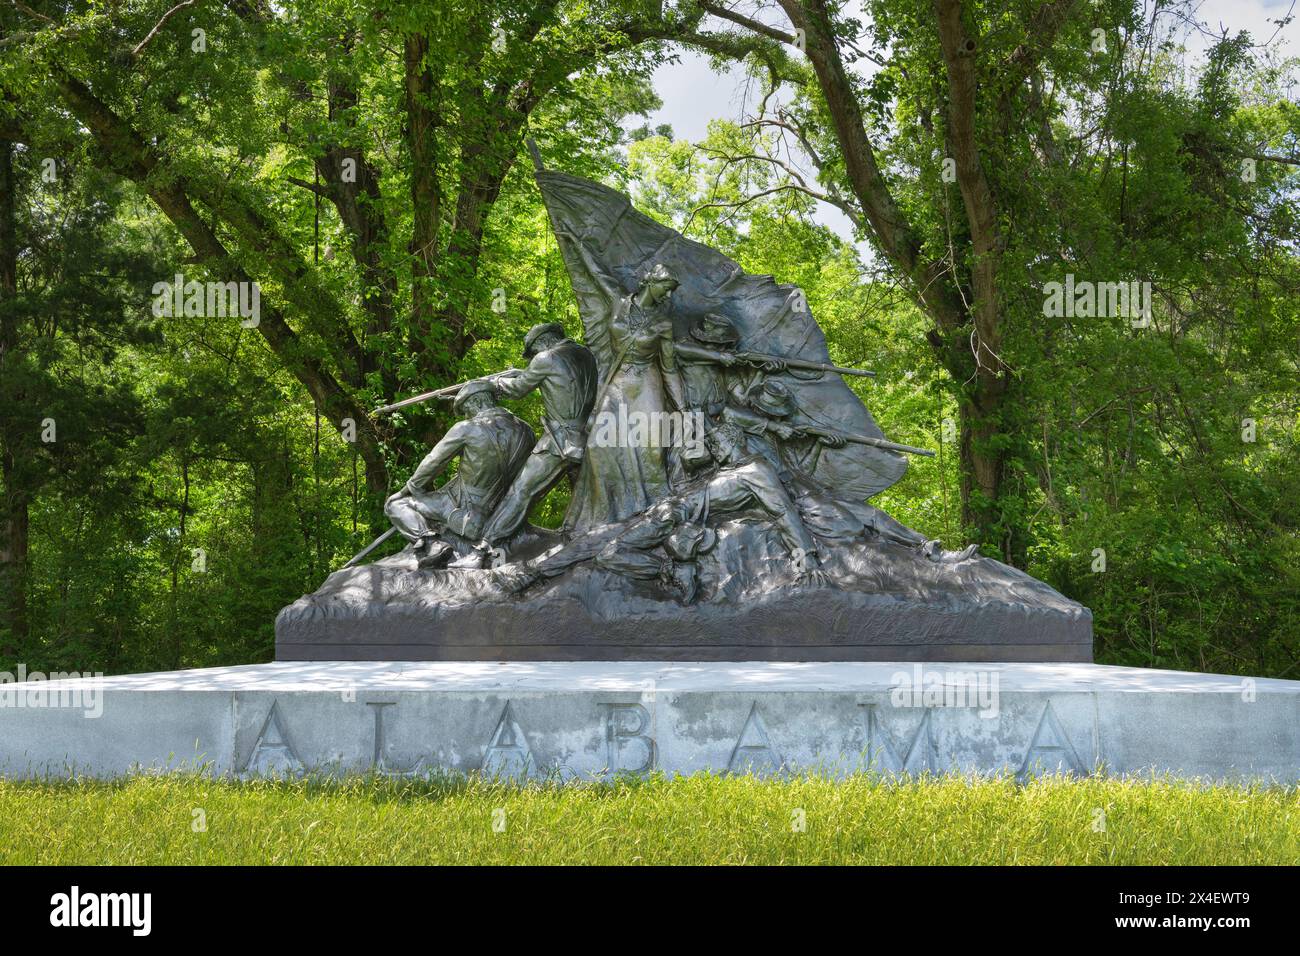 Mémorial de l'Alabama, parc militaire national de Vicksburg, Mississippi. L'œuvre en bronze représente sept hommes héroïques de l'Alabama. être inspiré par une représentante féminine Banque D'Images